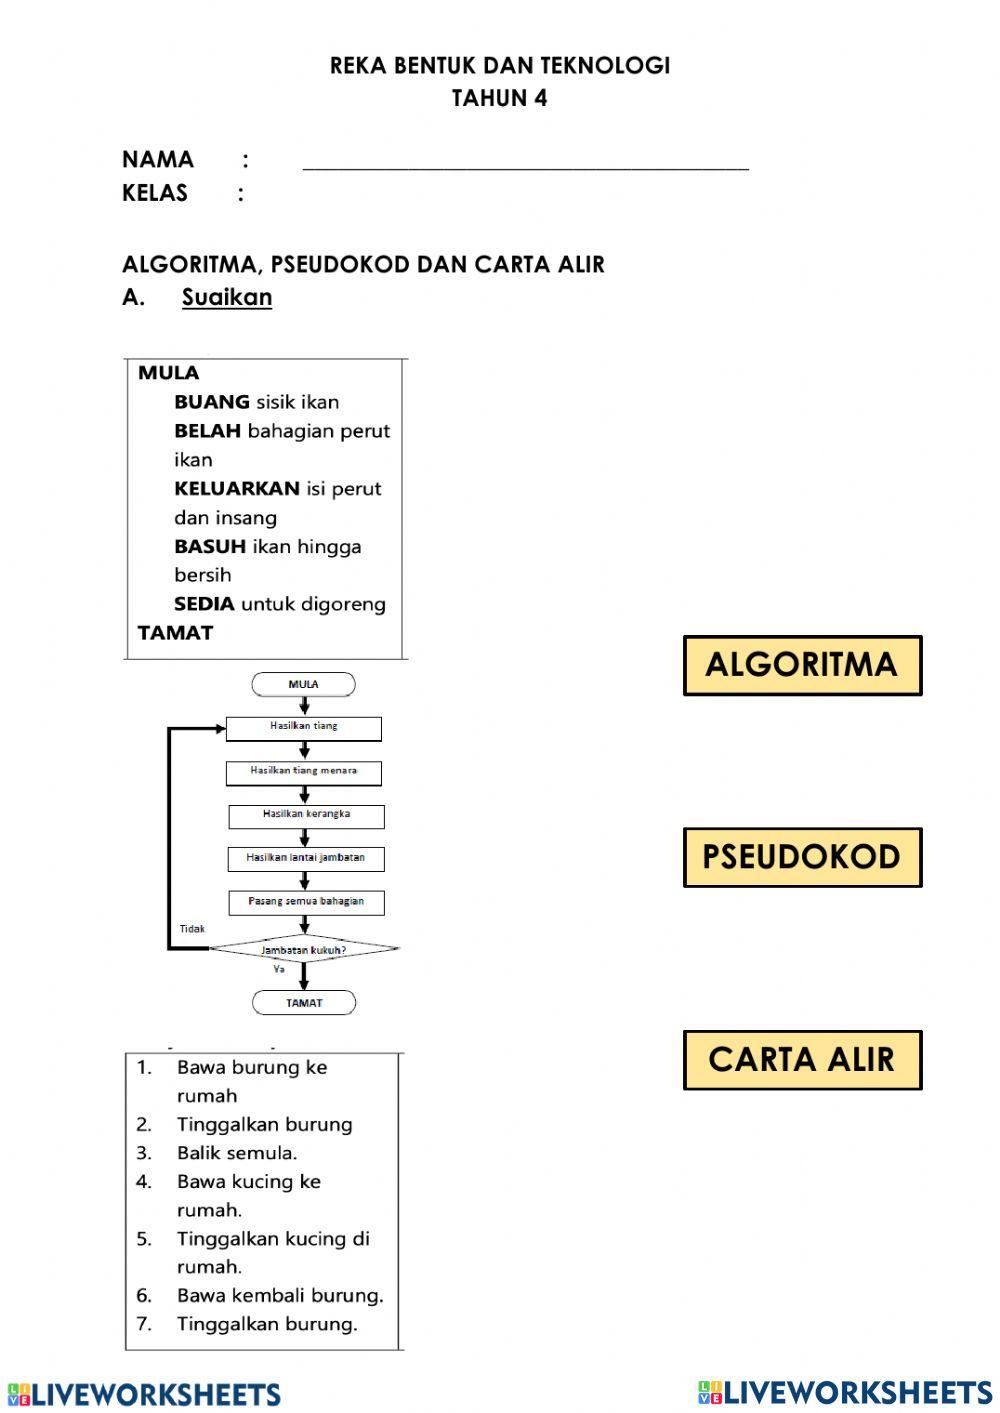 Rbt tahun 4: asas algoritma, pseudokod dan carta  alir